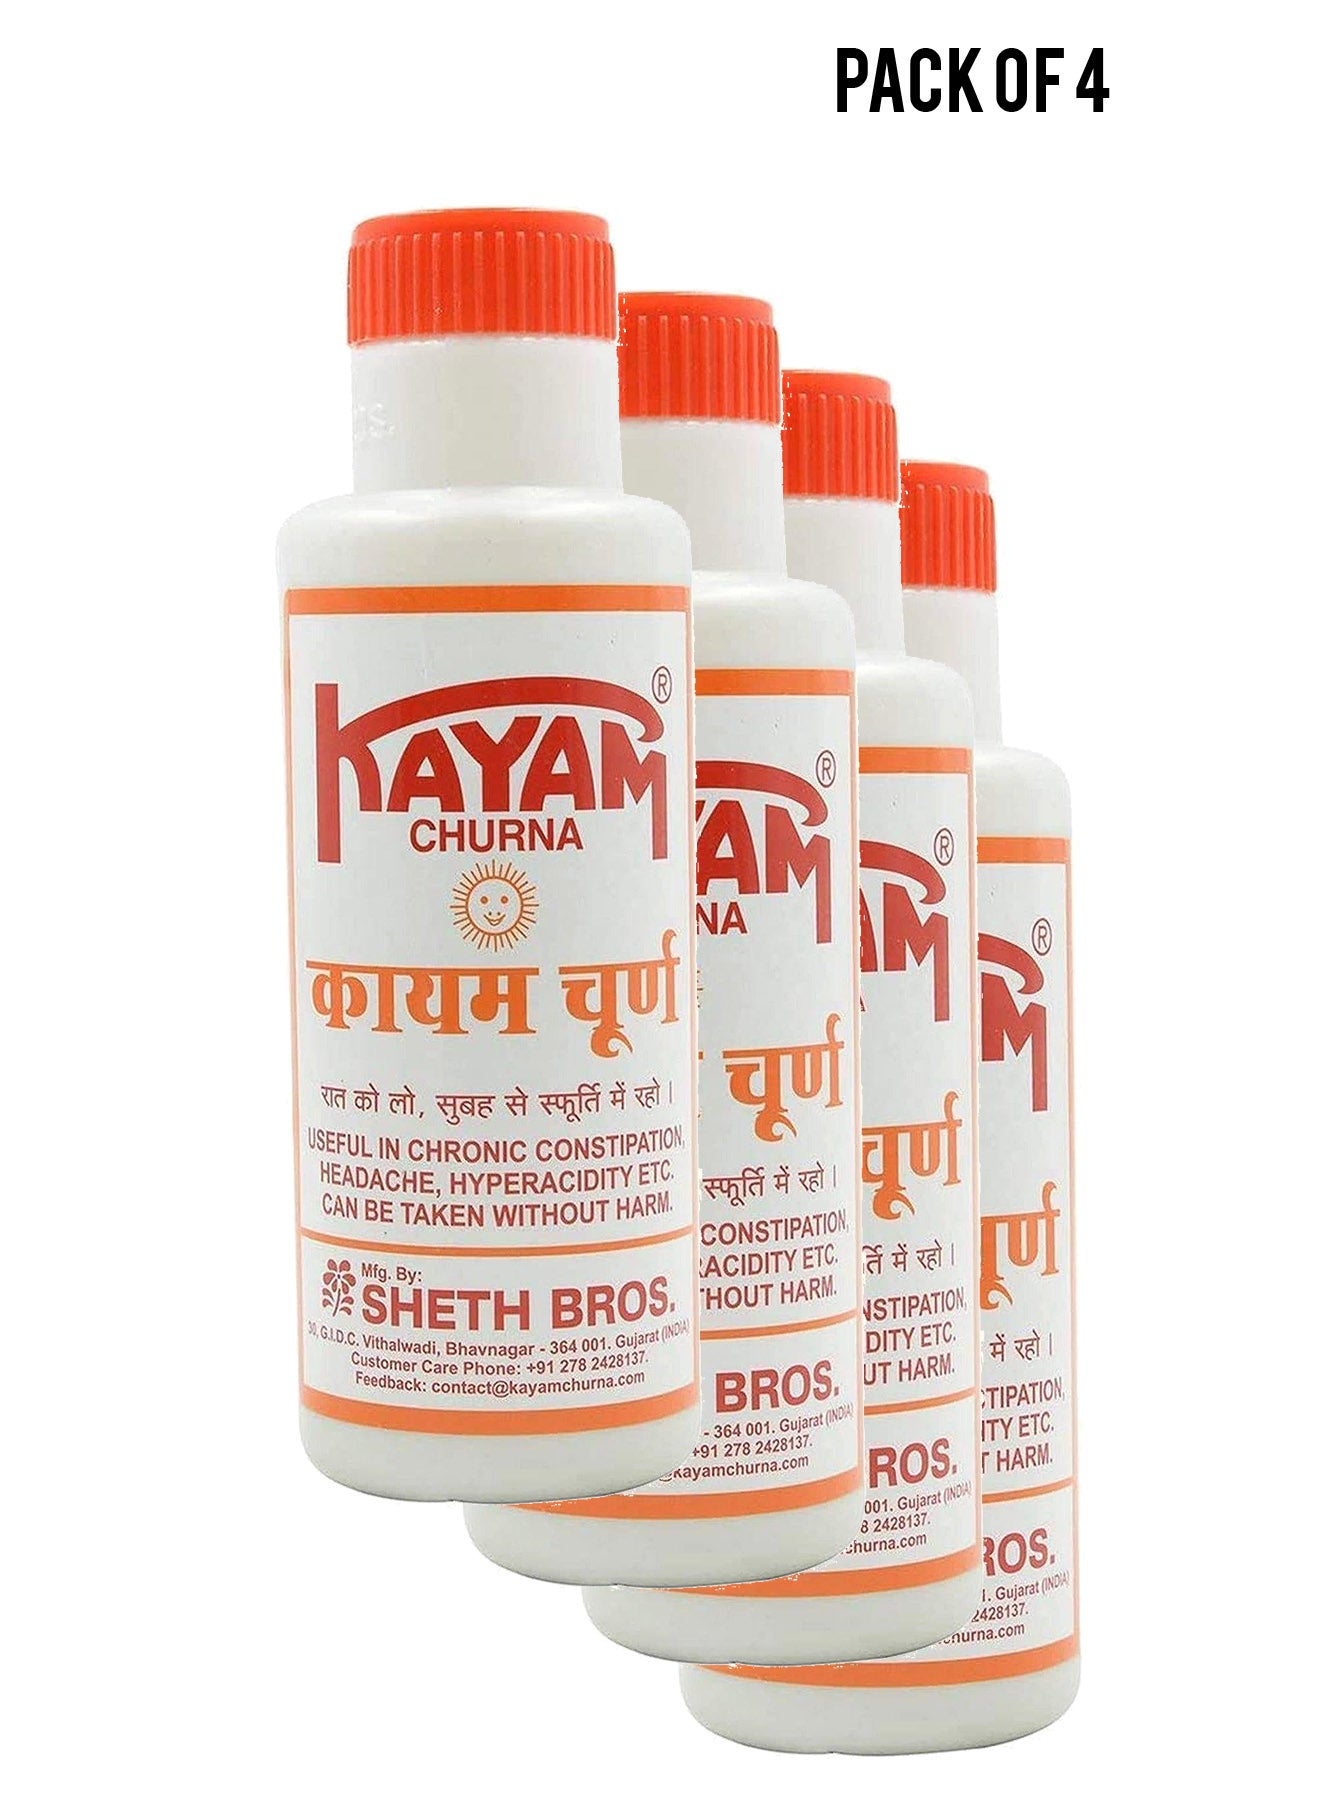 Shreth Bros Kayam Churna 100 gm Value Pack of 4 